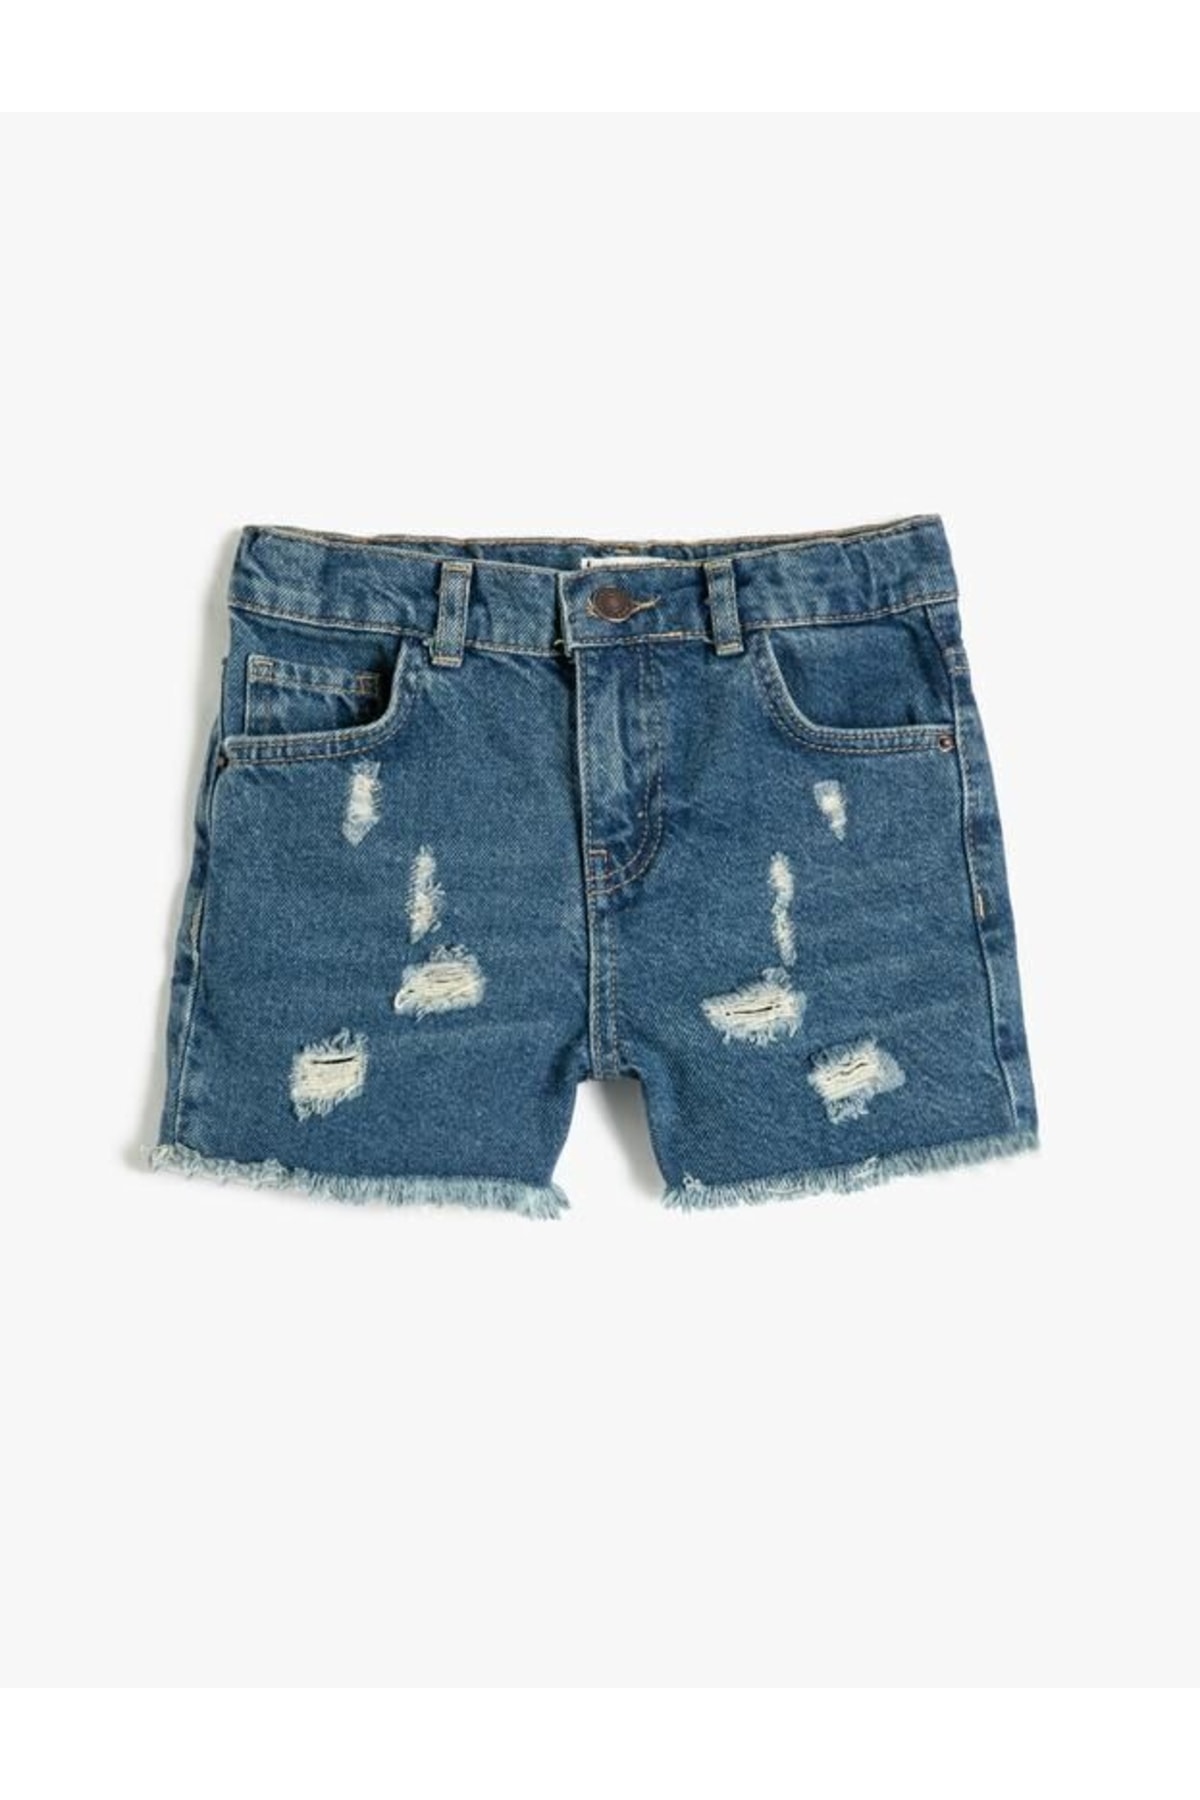 Levně Koton Girl's Denim Shorts Destroyed Pocket Cotton